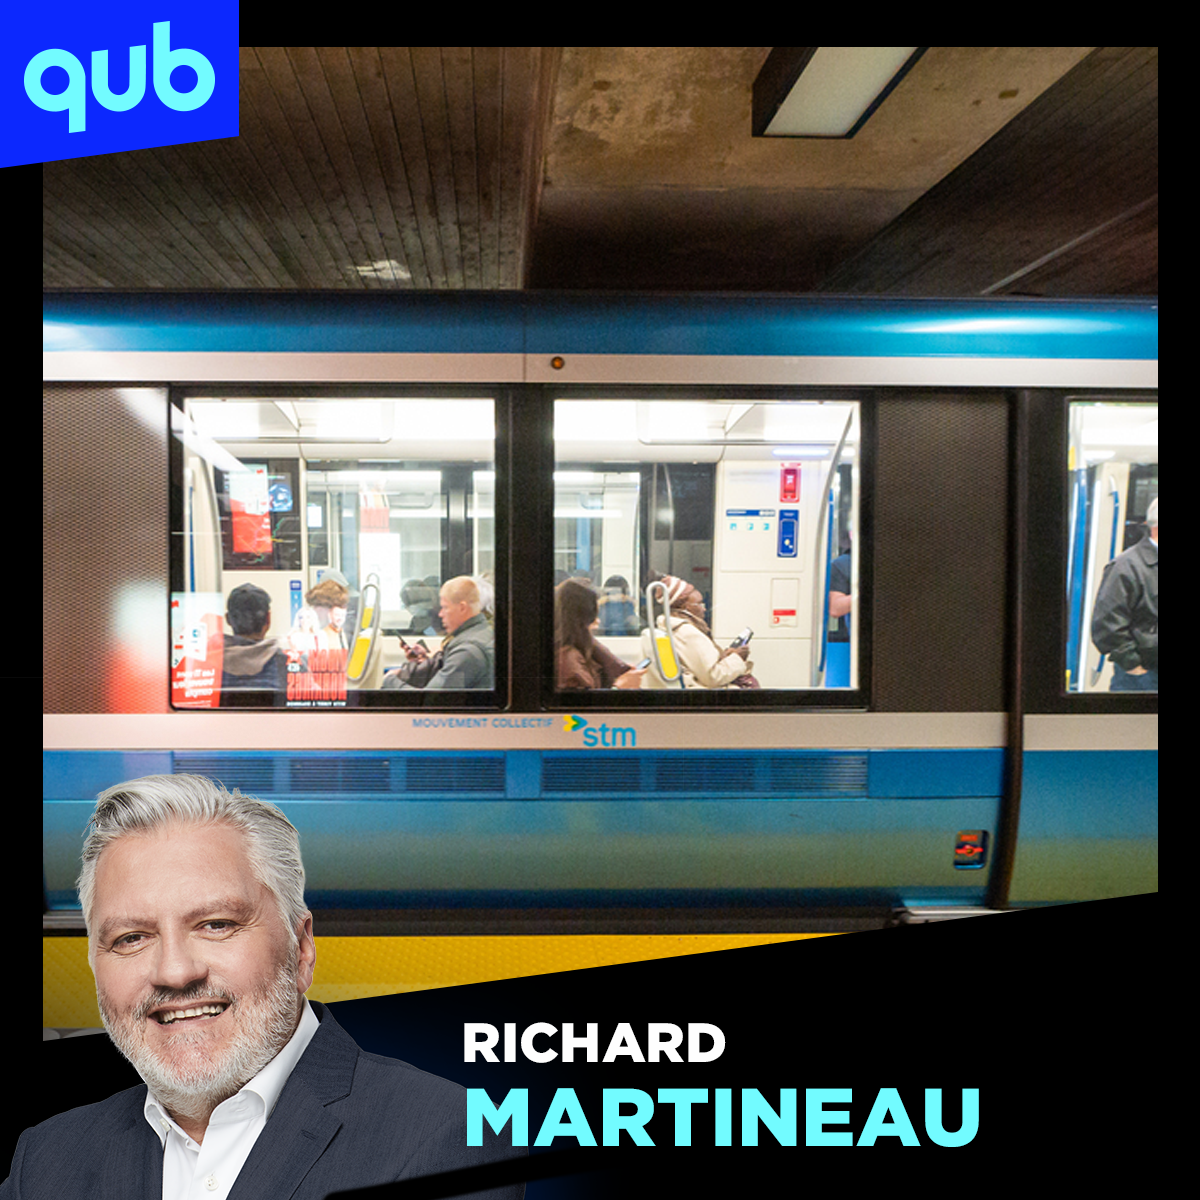 La fille de Richard Martineau s'est faite attaquer dans le métro!